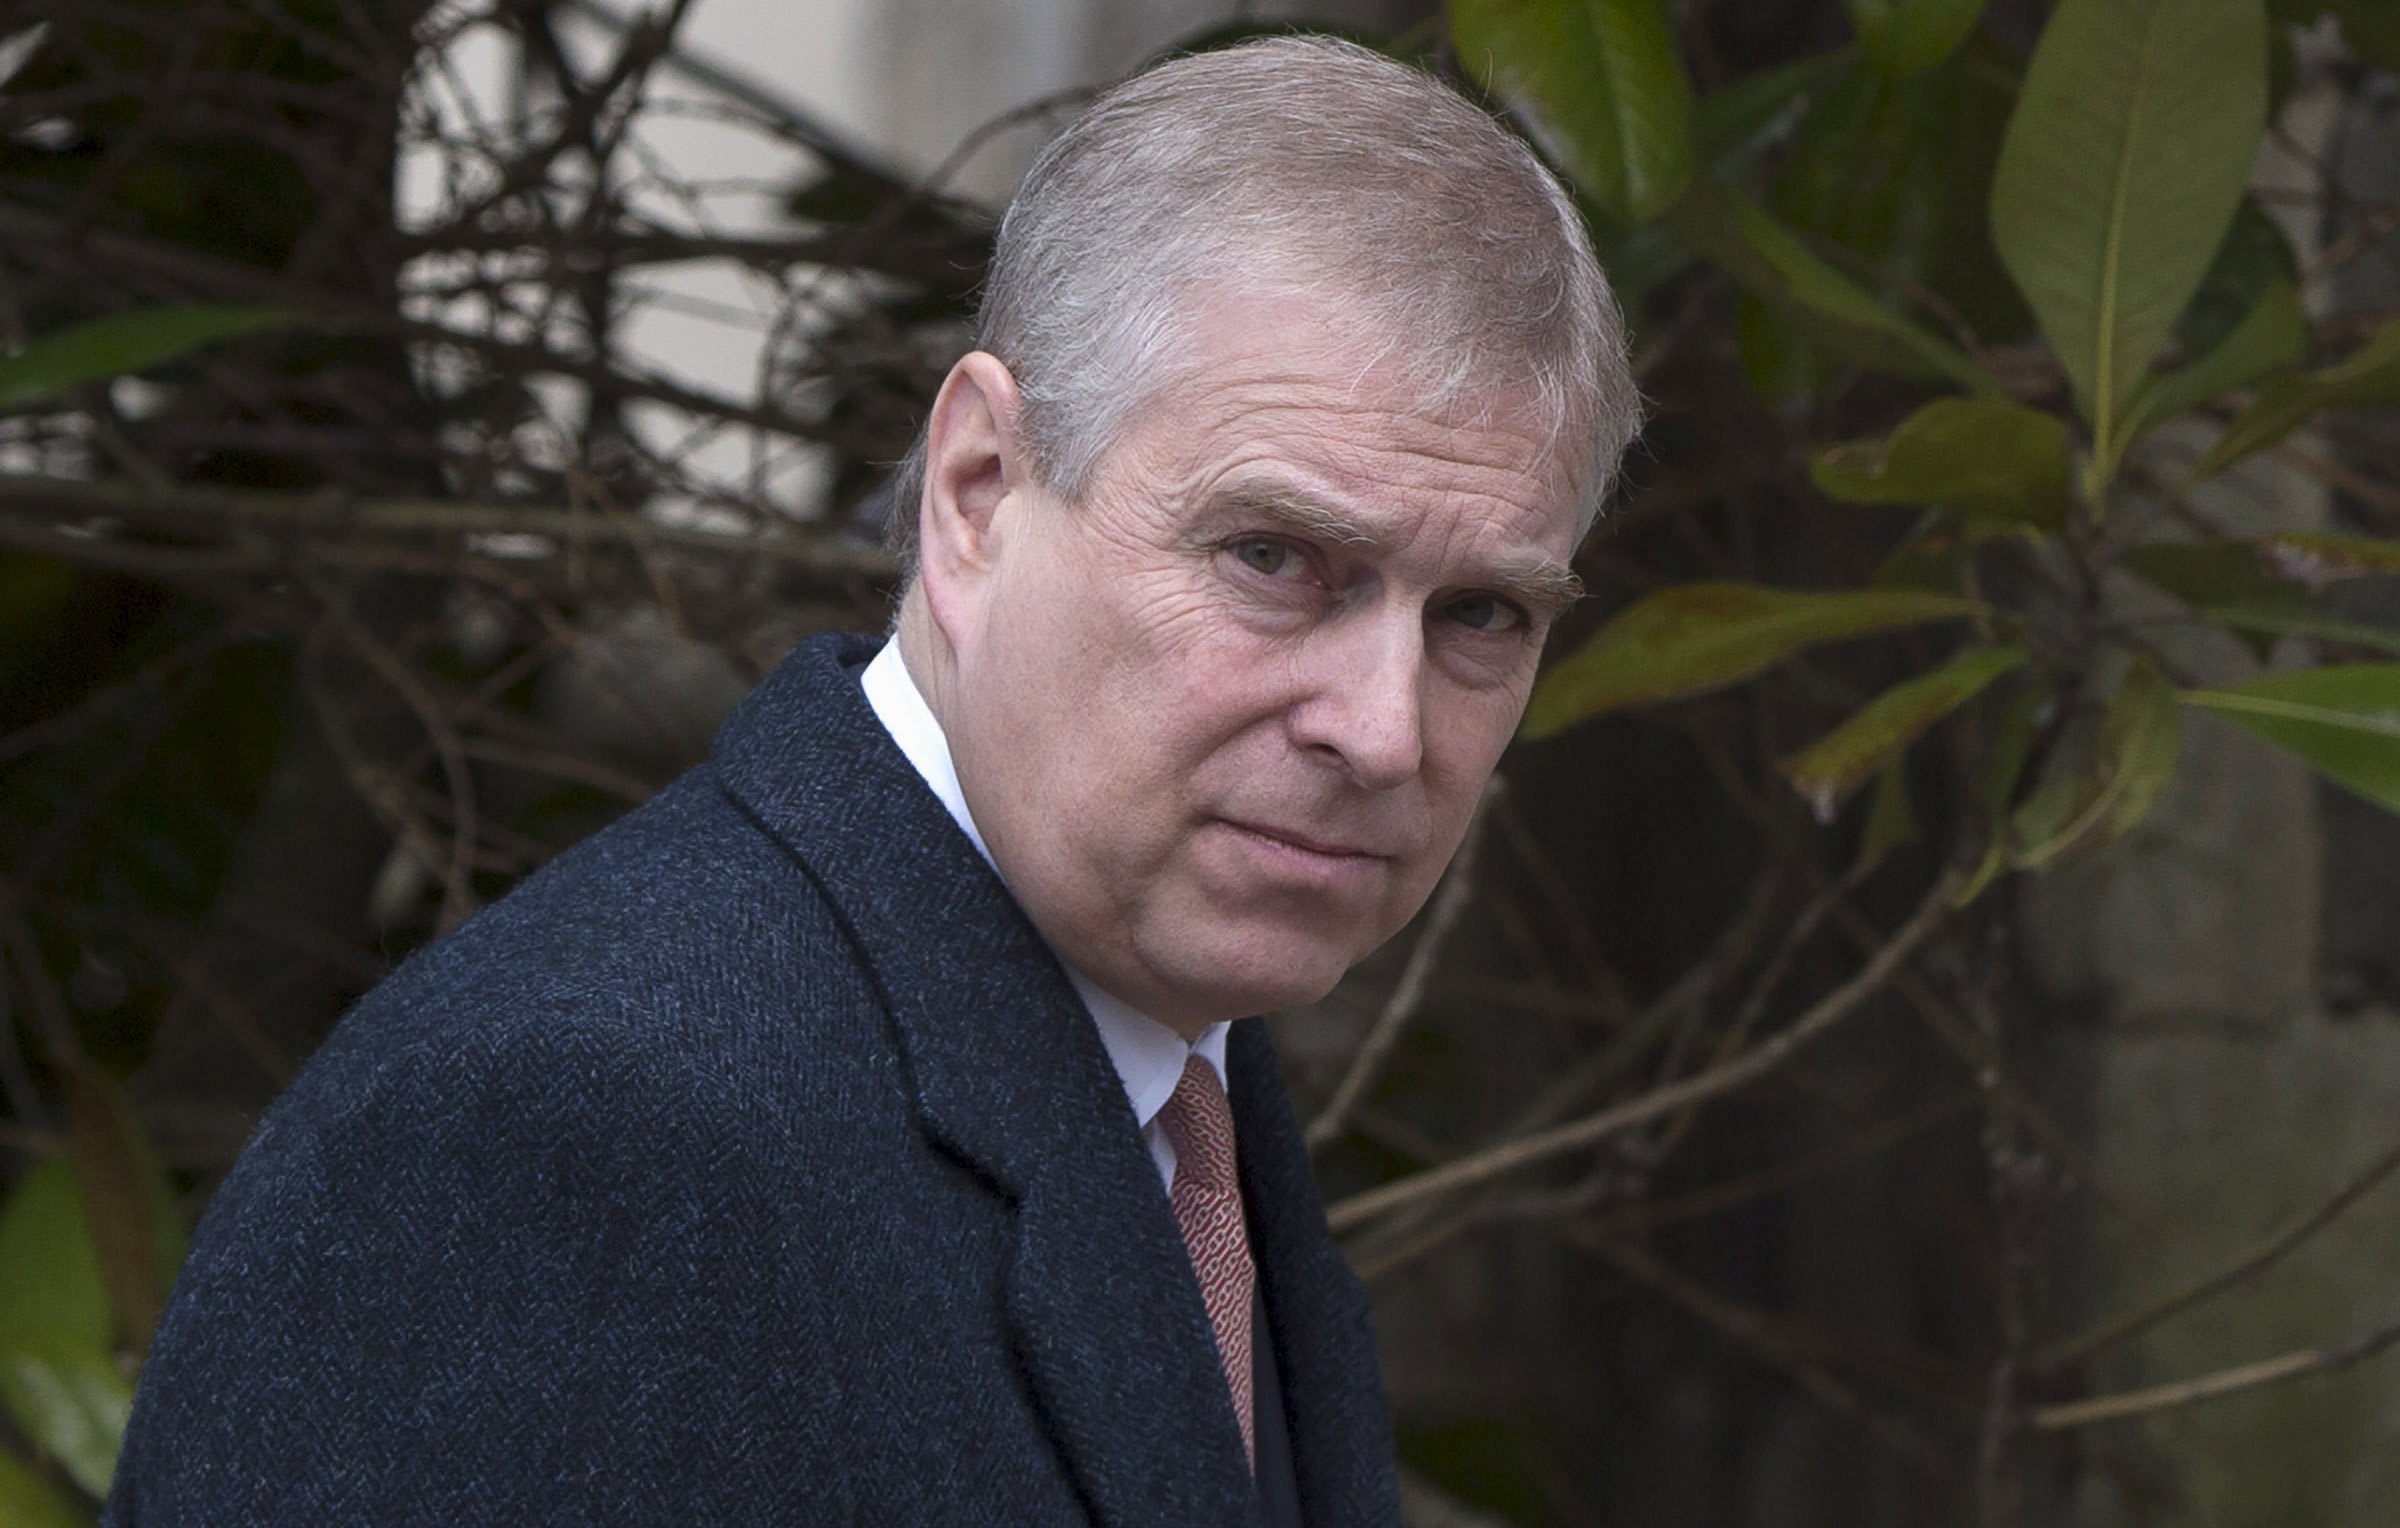 Le prince Andrew devrait être nommé aujourd'hui dans des documents judiciaires relatifs au pédophile Jeffrey Epstein.